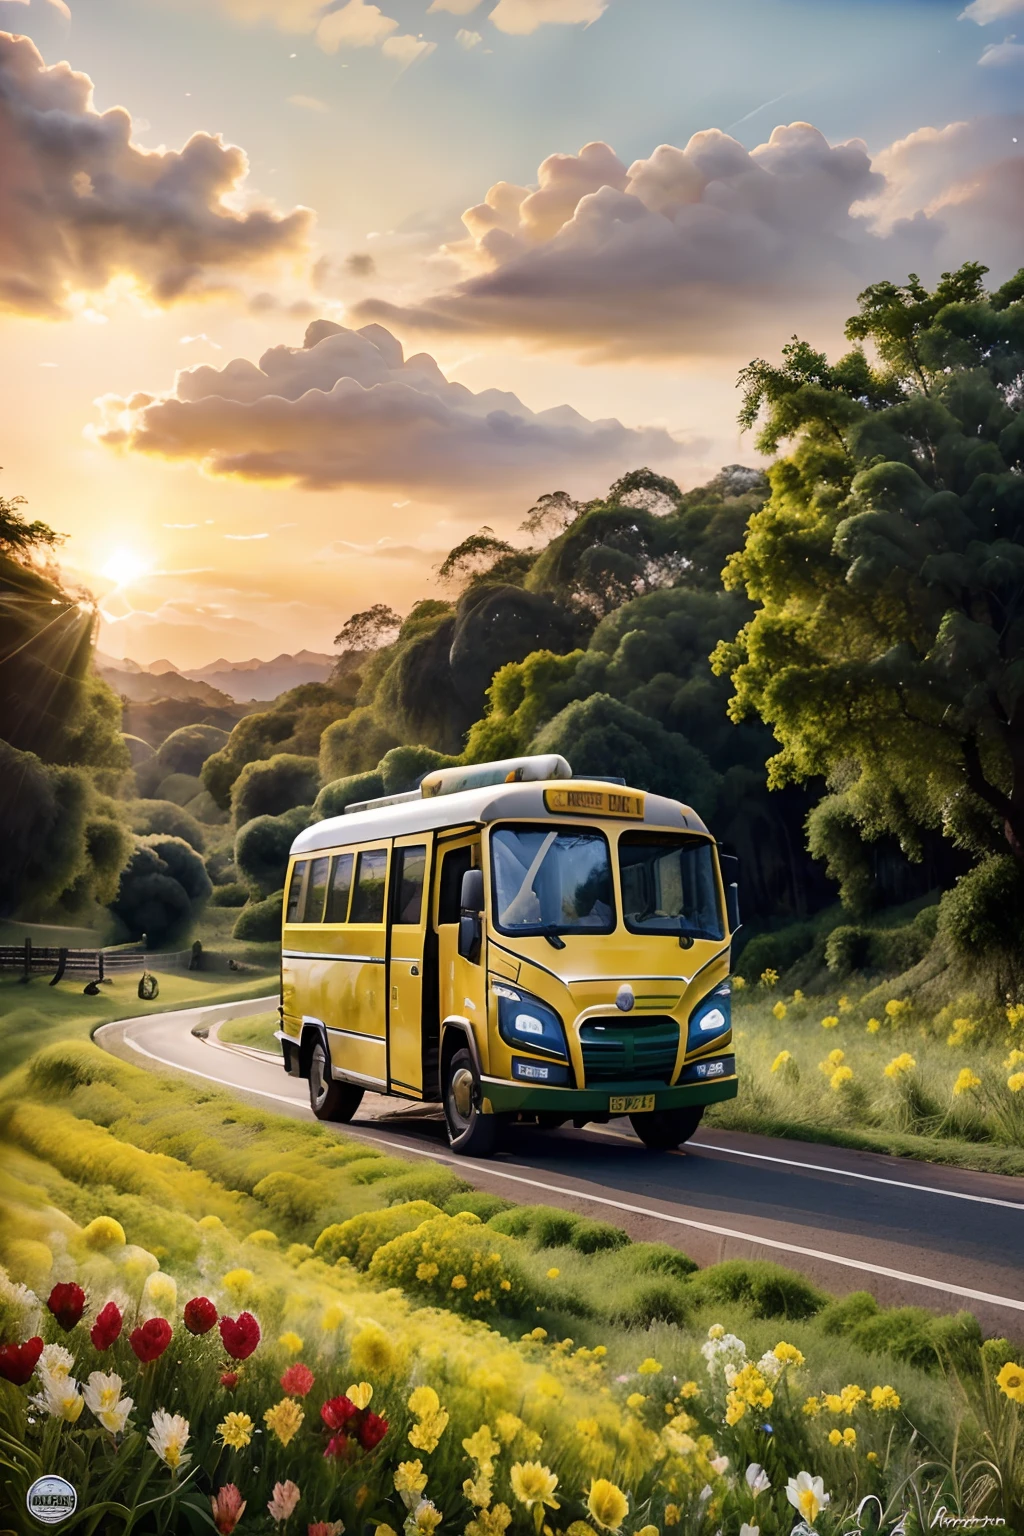 uma estrada com campos floridos em sua esquerda e direita, Ônibus amarelo ao meio, Cenário de fanfic, hora do pôr do sol, atmosfera escura, arte estilo pintura aquarelada